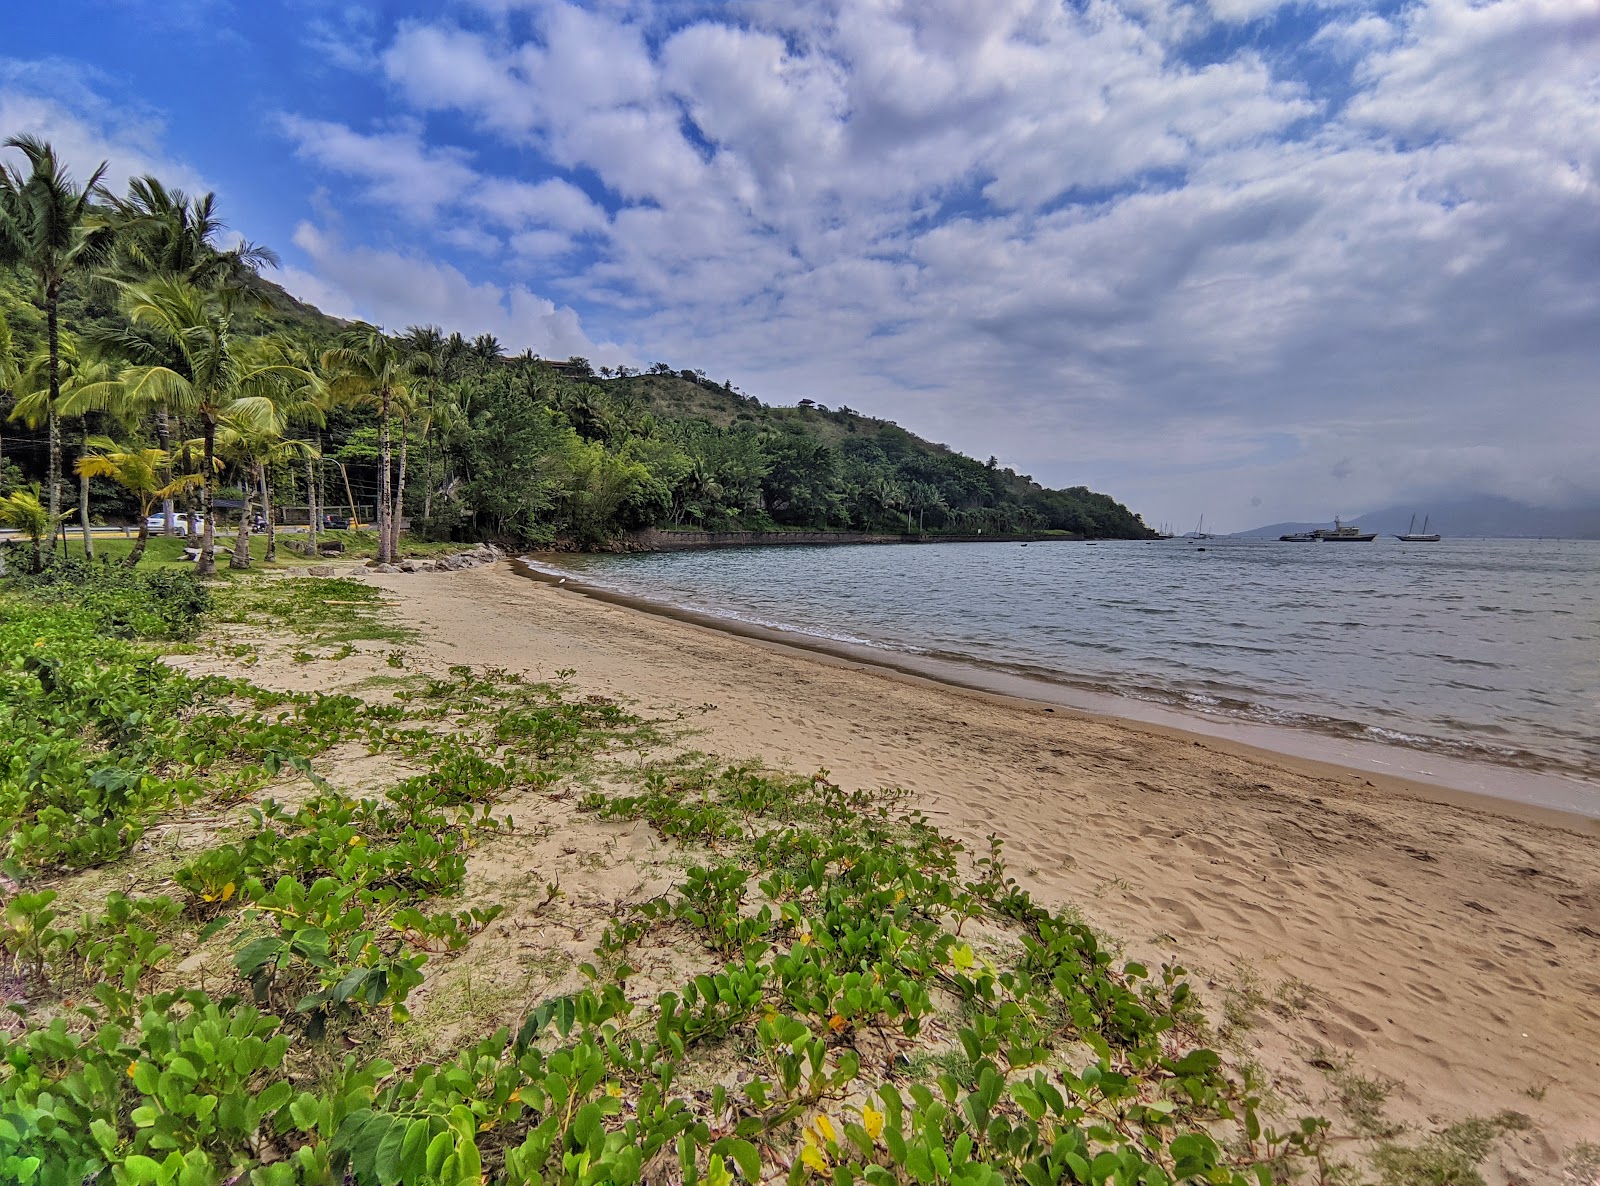 Fotografie cu Praia do Barreiros cu o suprafață de nisip strălucitor